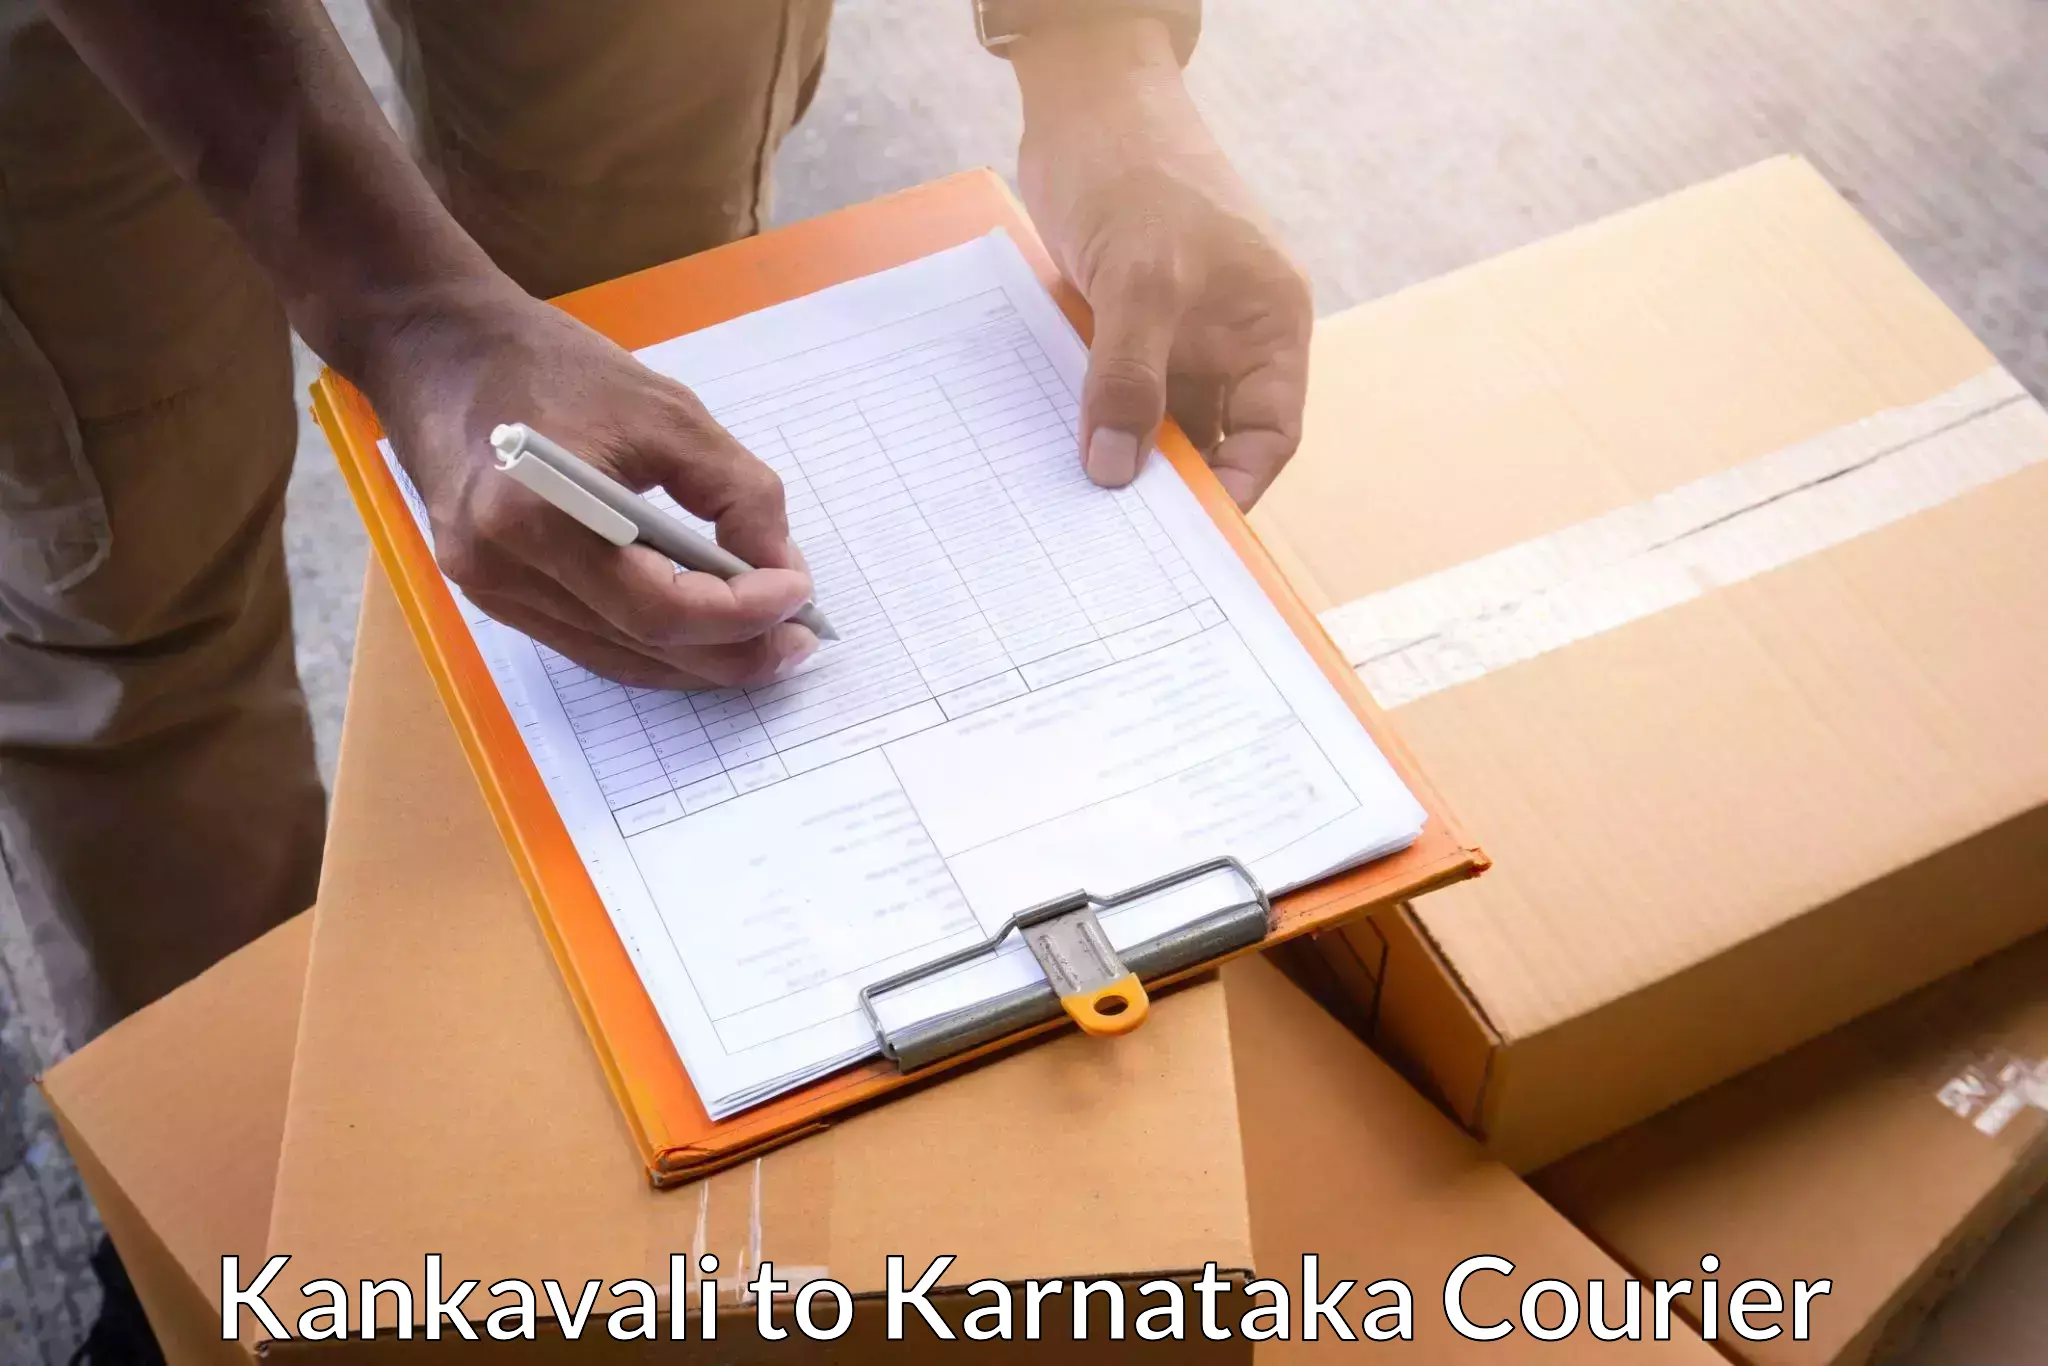 Logistics service provider Kankavali to Badami